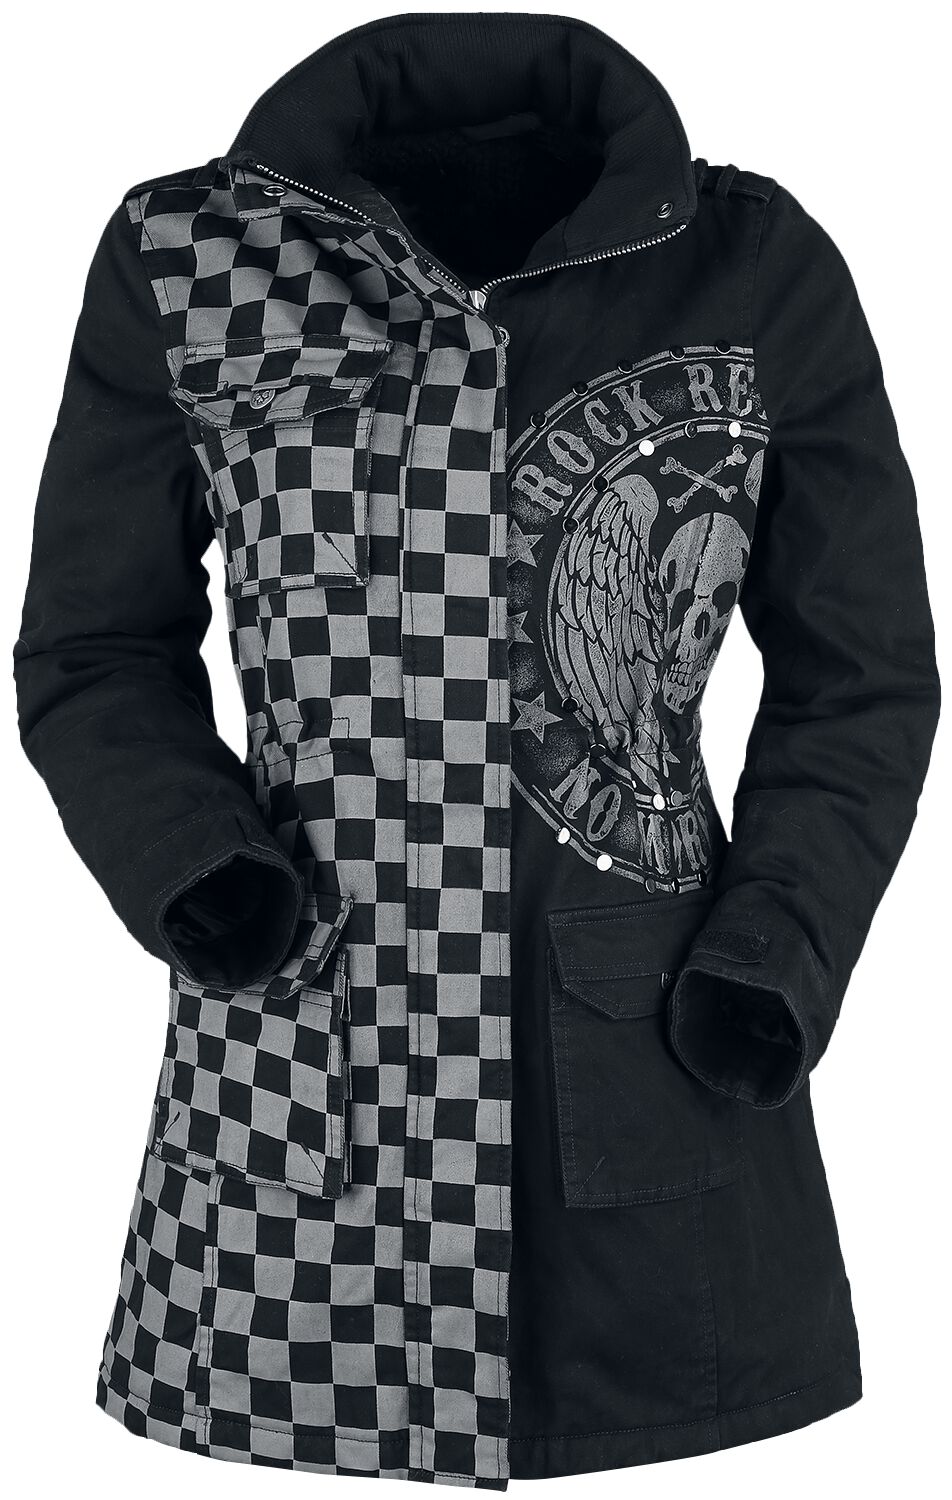 Rock Rebel by EMP schwarz/graue Jacke mit Nieten und Print Winterjacke grau schwarz in M